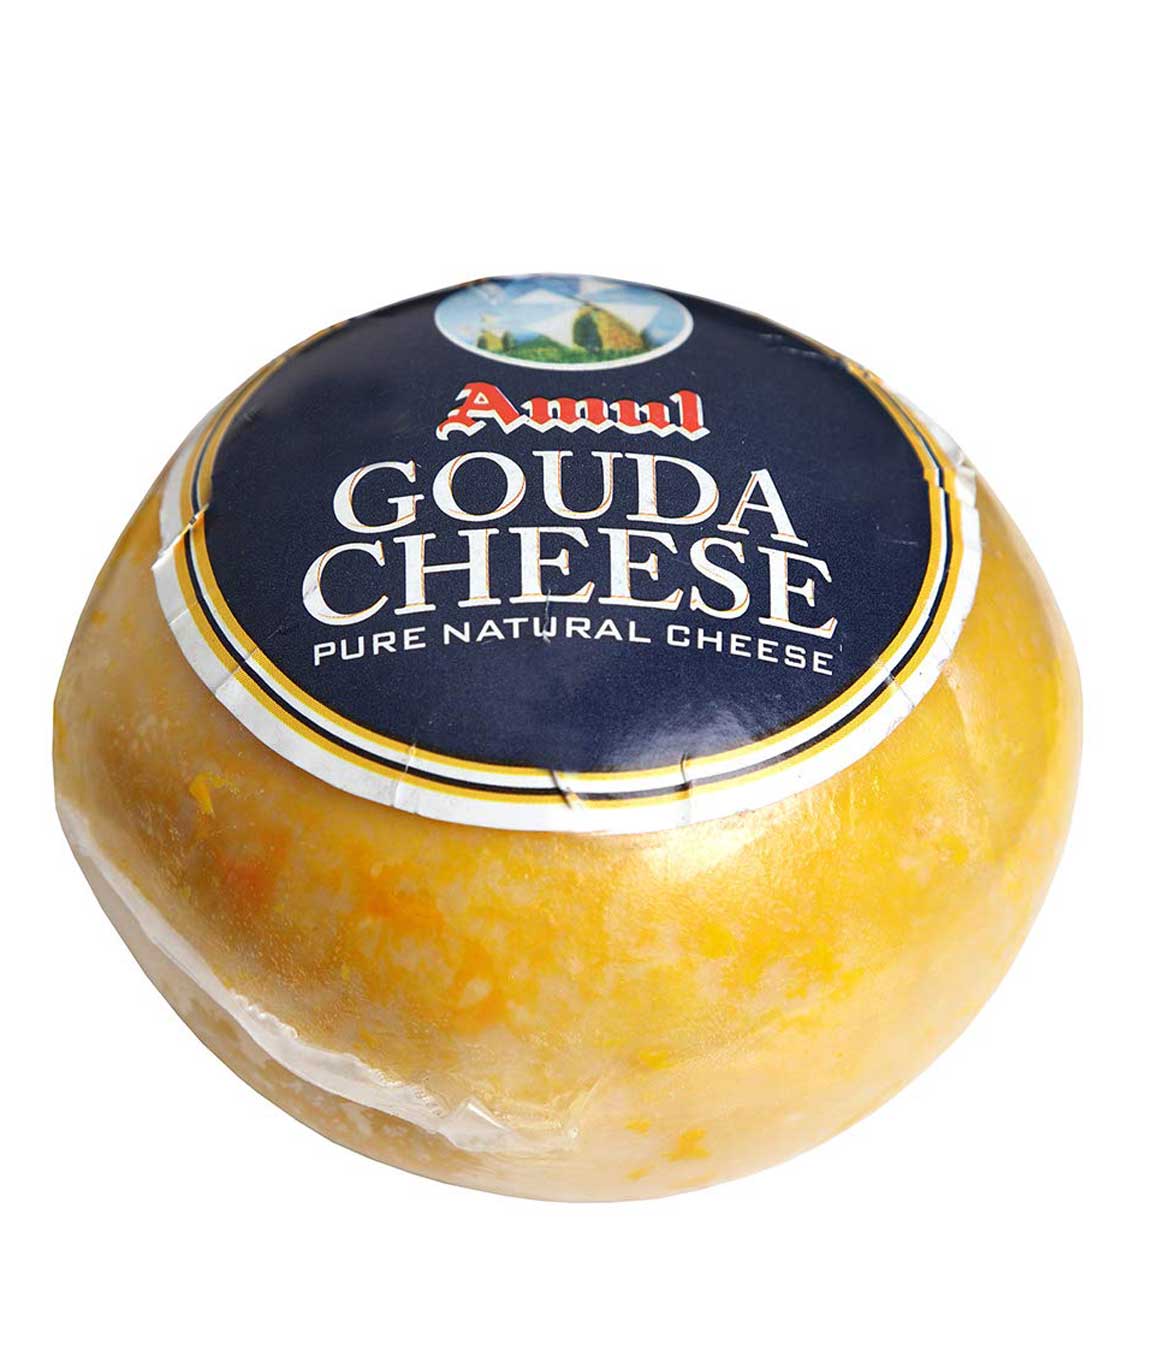 Amul Gouda Cheese, 250g